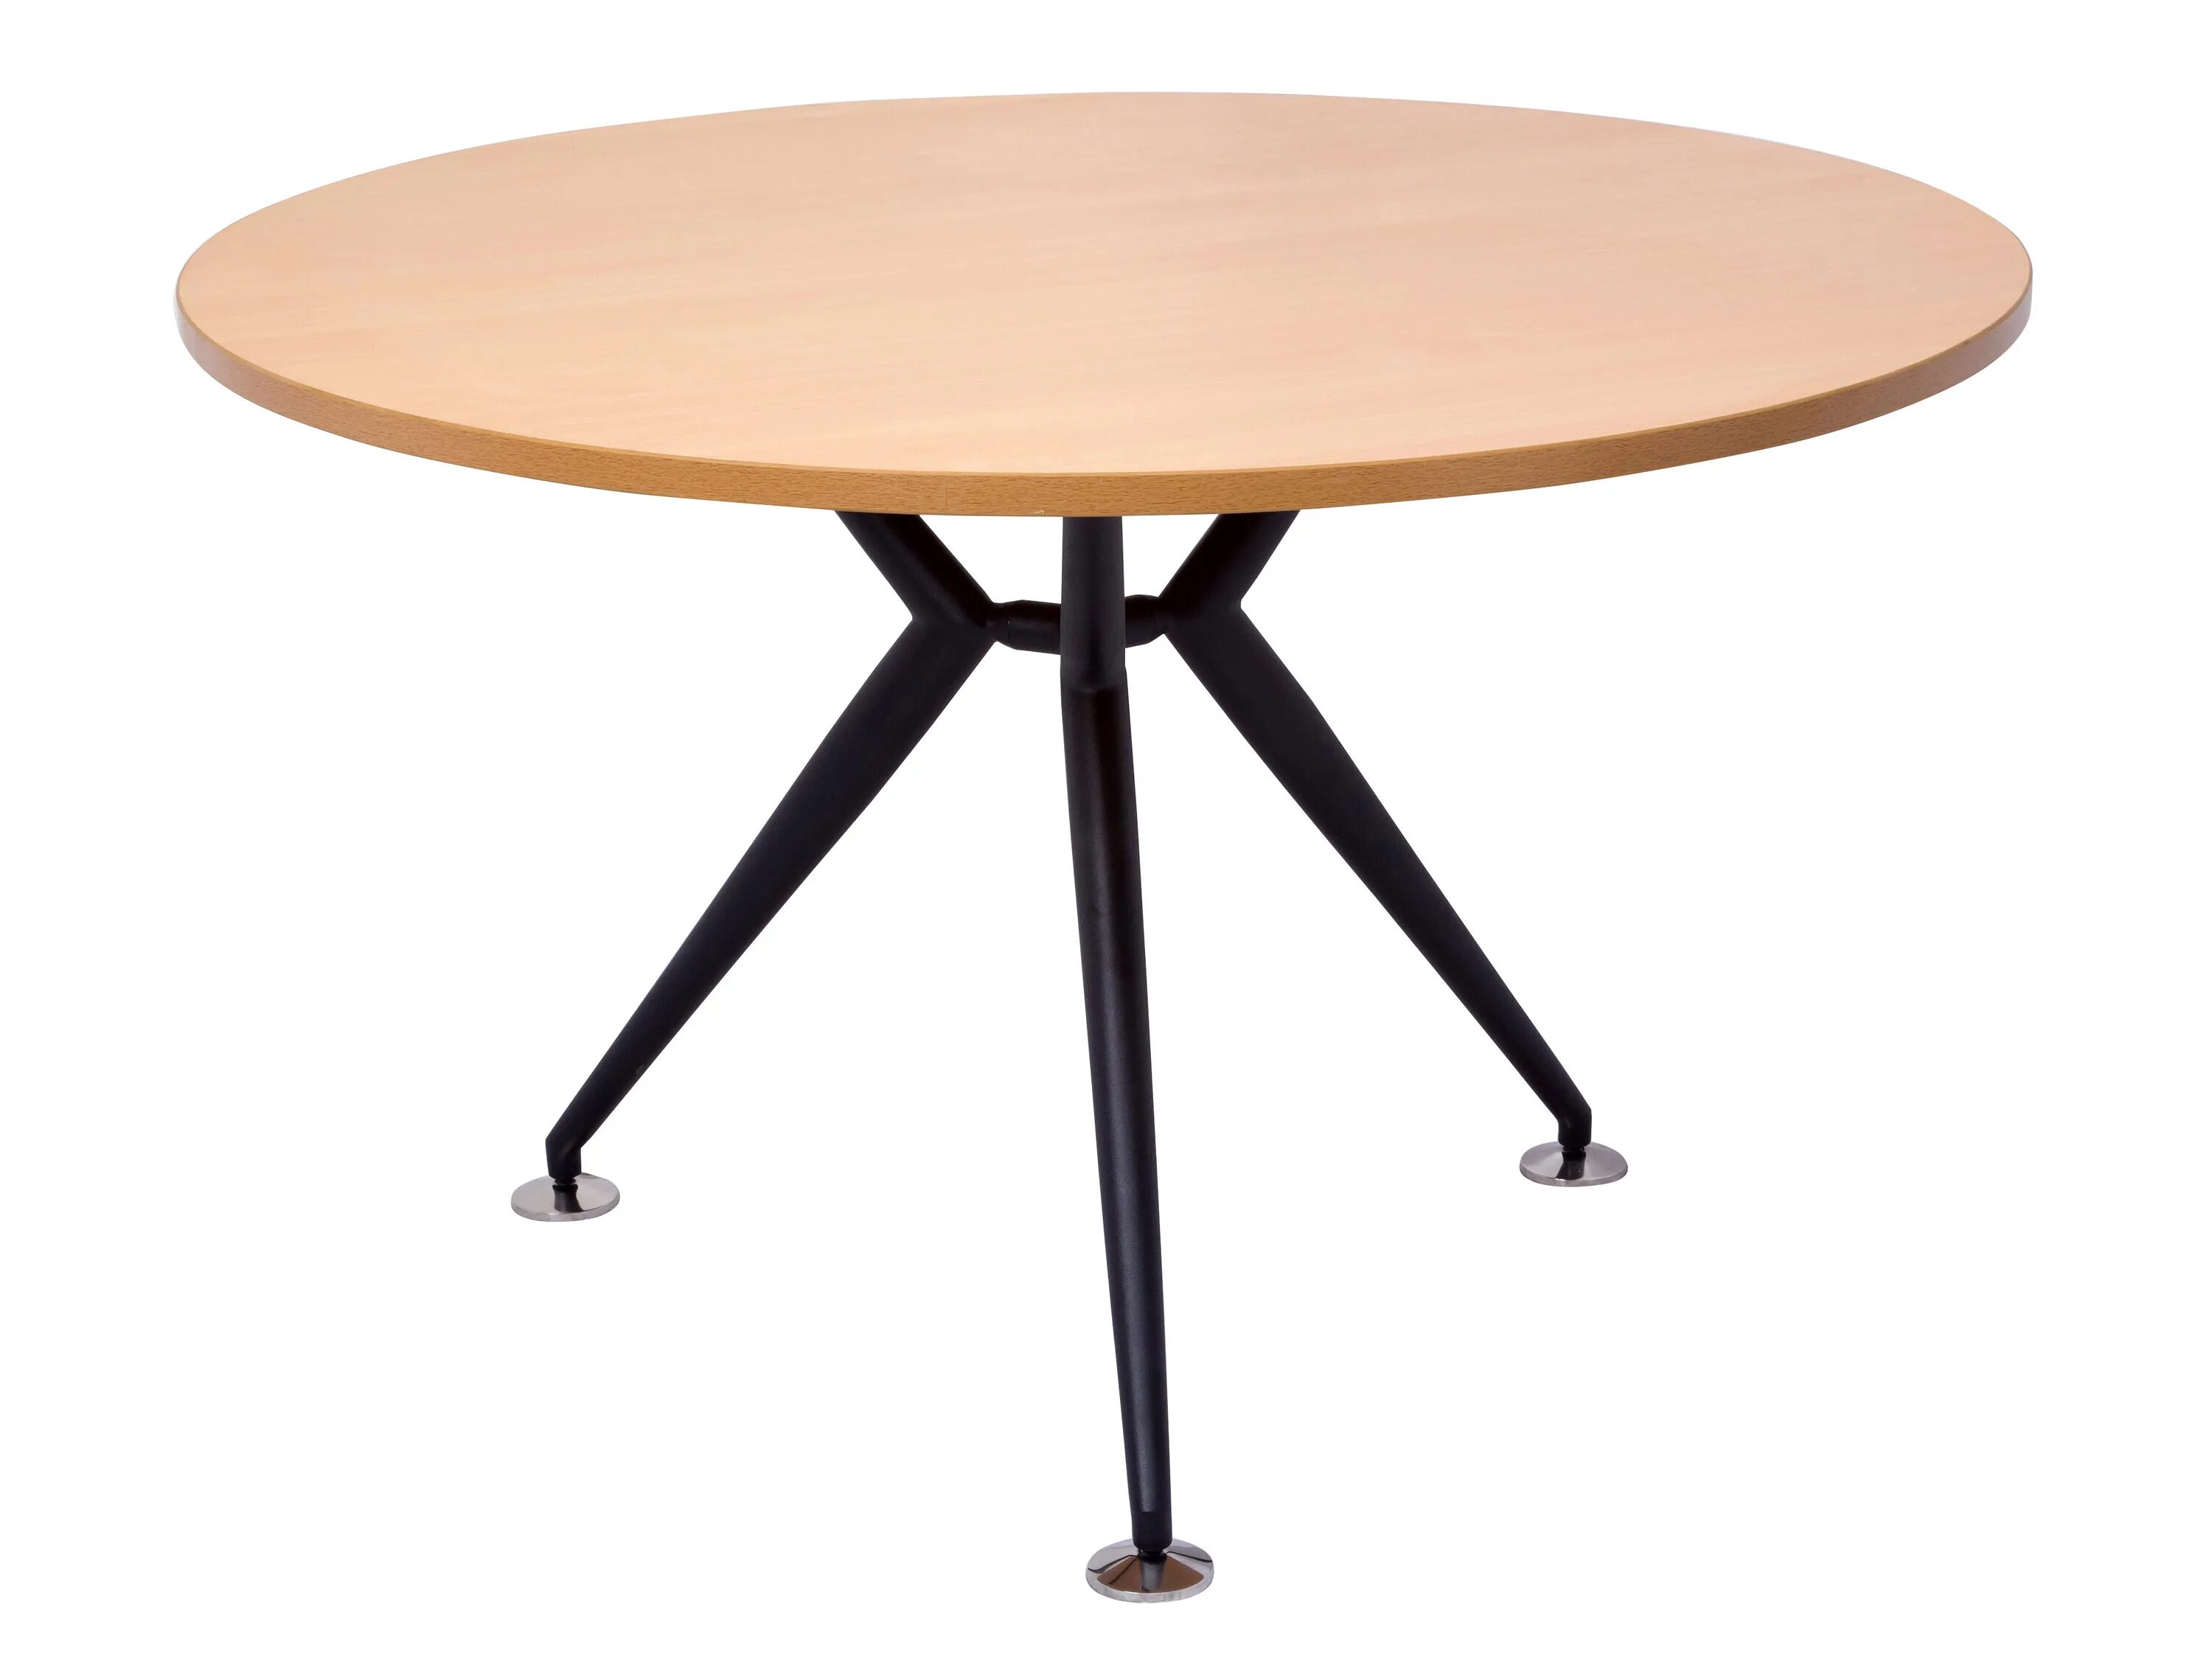 За круглый стол на 51 стульев. Круглый стол для офиса. Круглый стол 1800 мм. Круглый стол 110 см. Круглый стол на 5 человек.